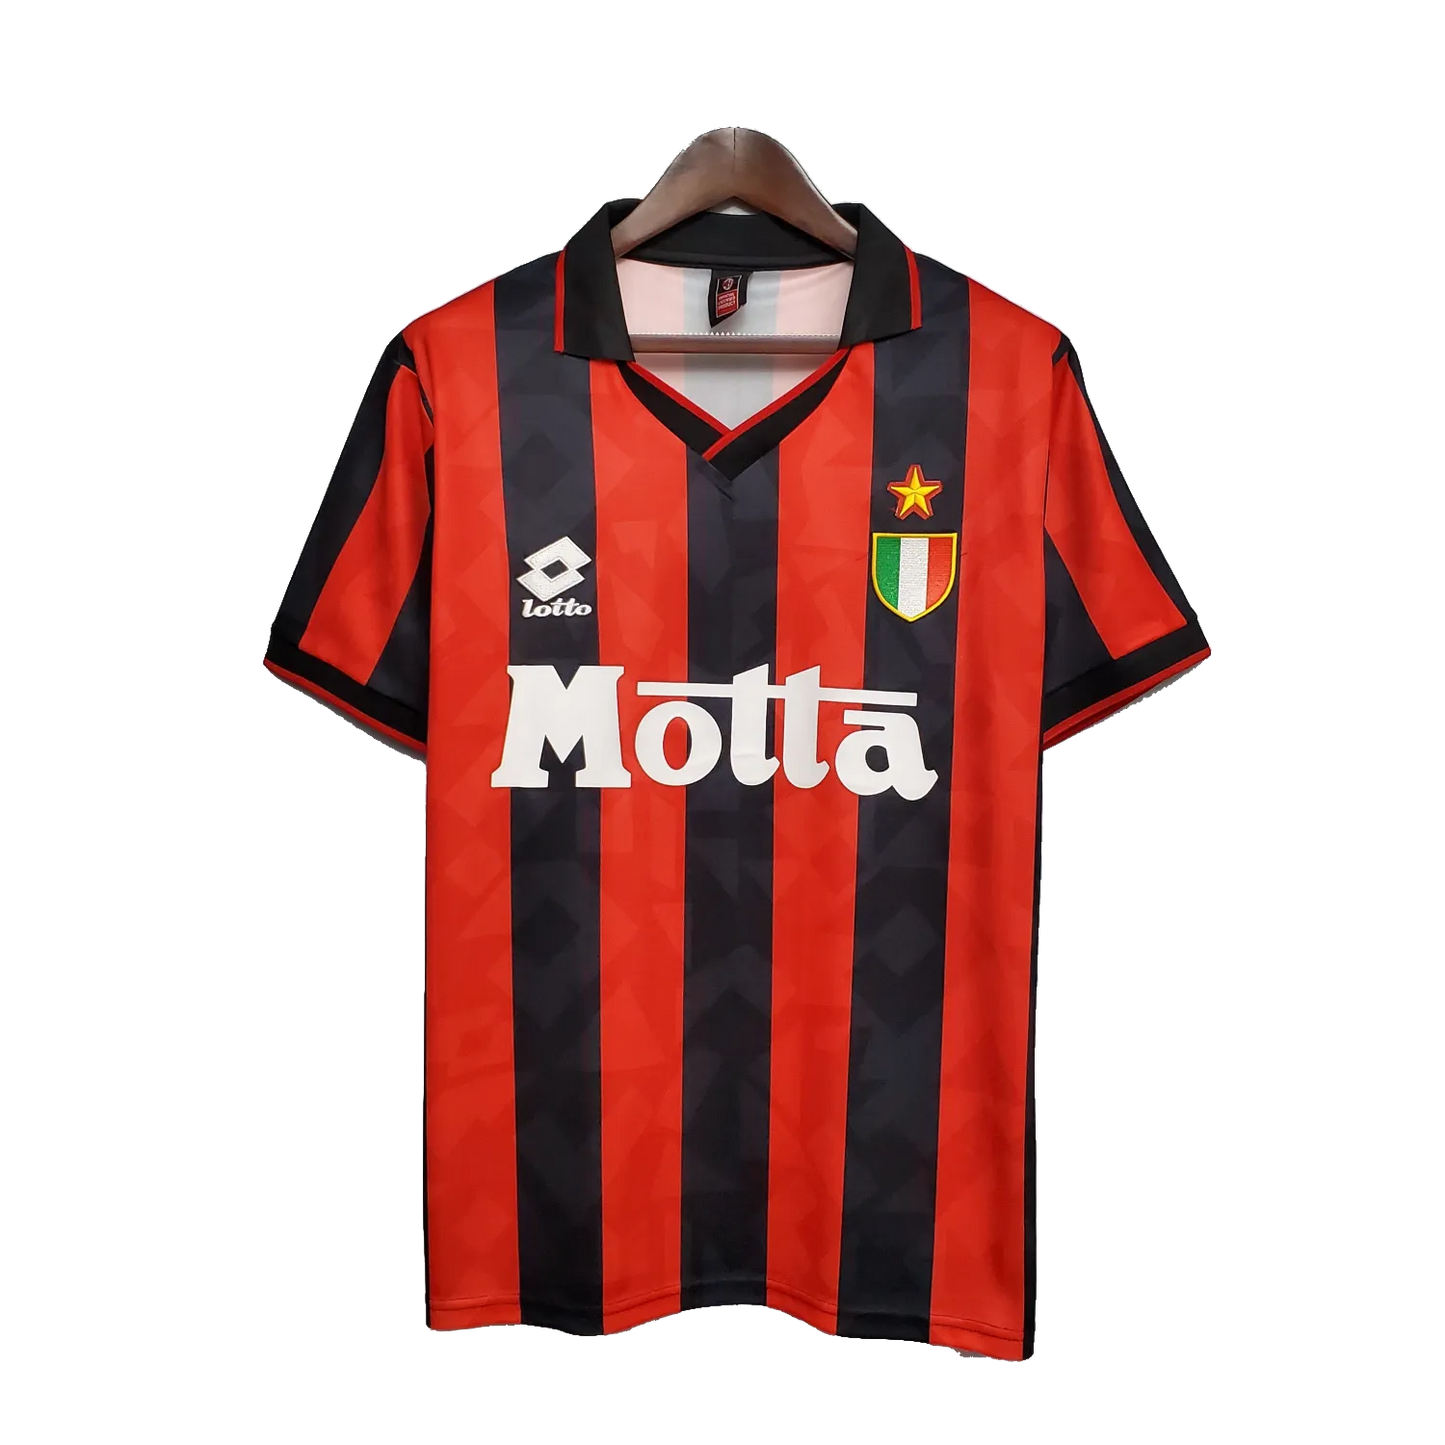 AC Milan Retro Home Jersey 1993/94 Red & Black Men's